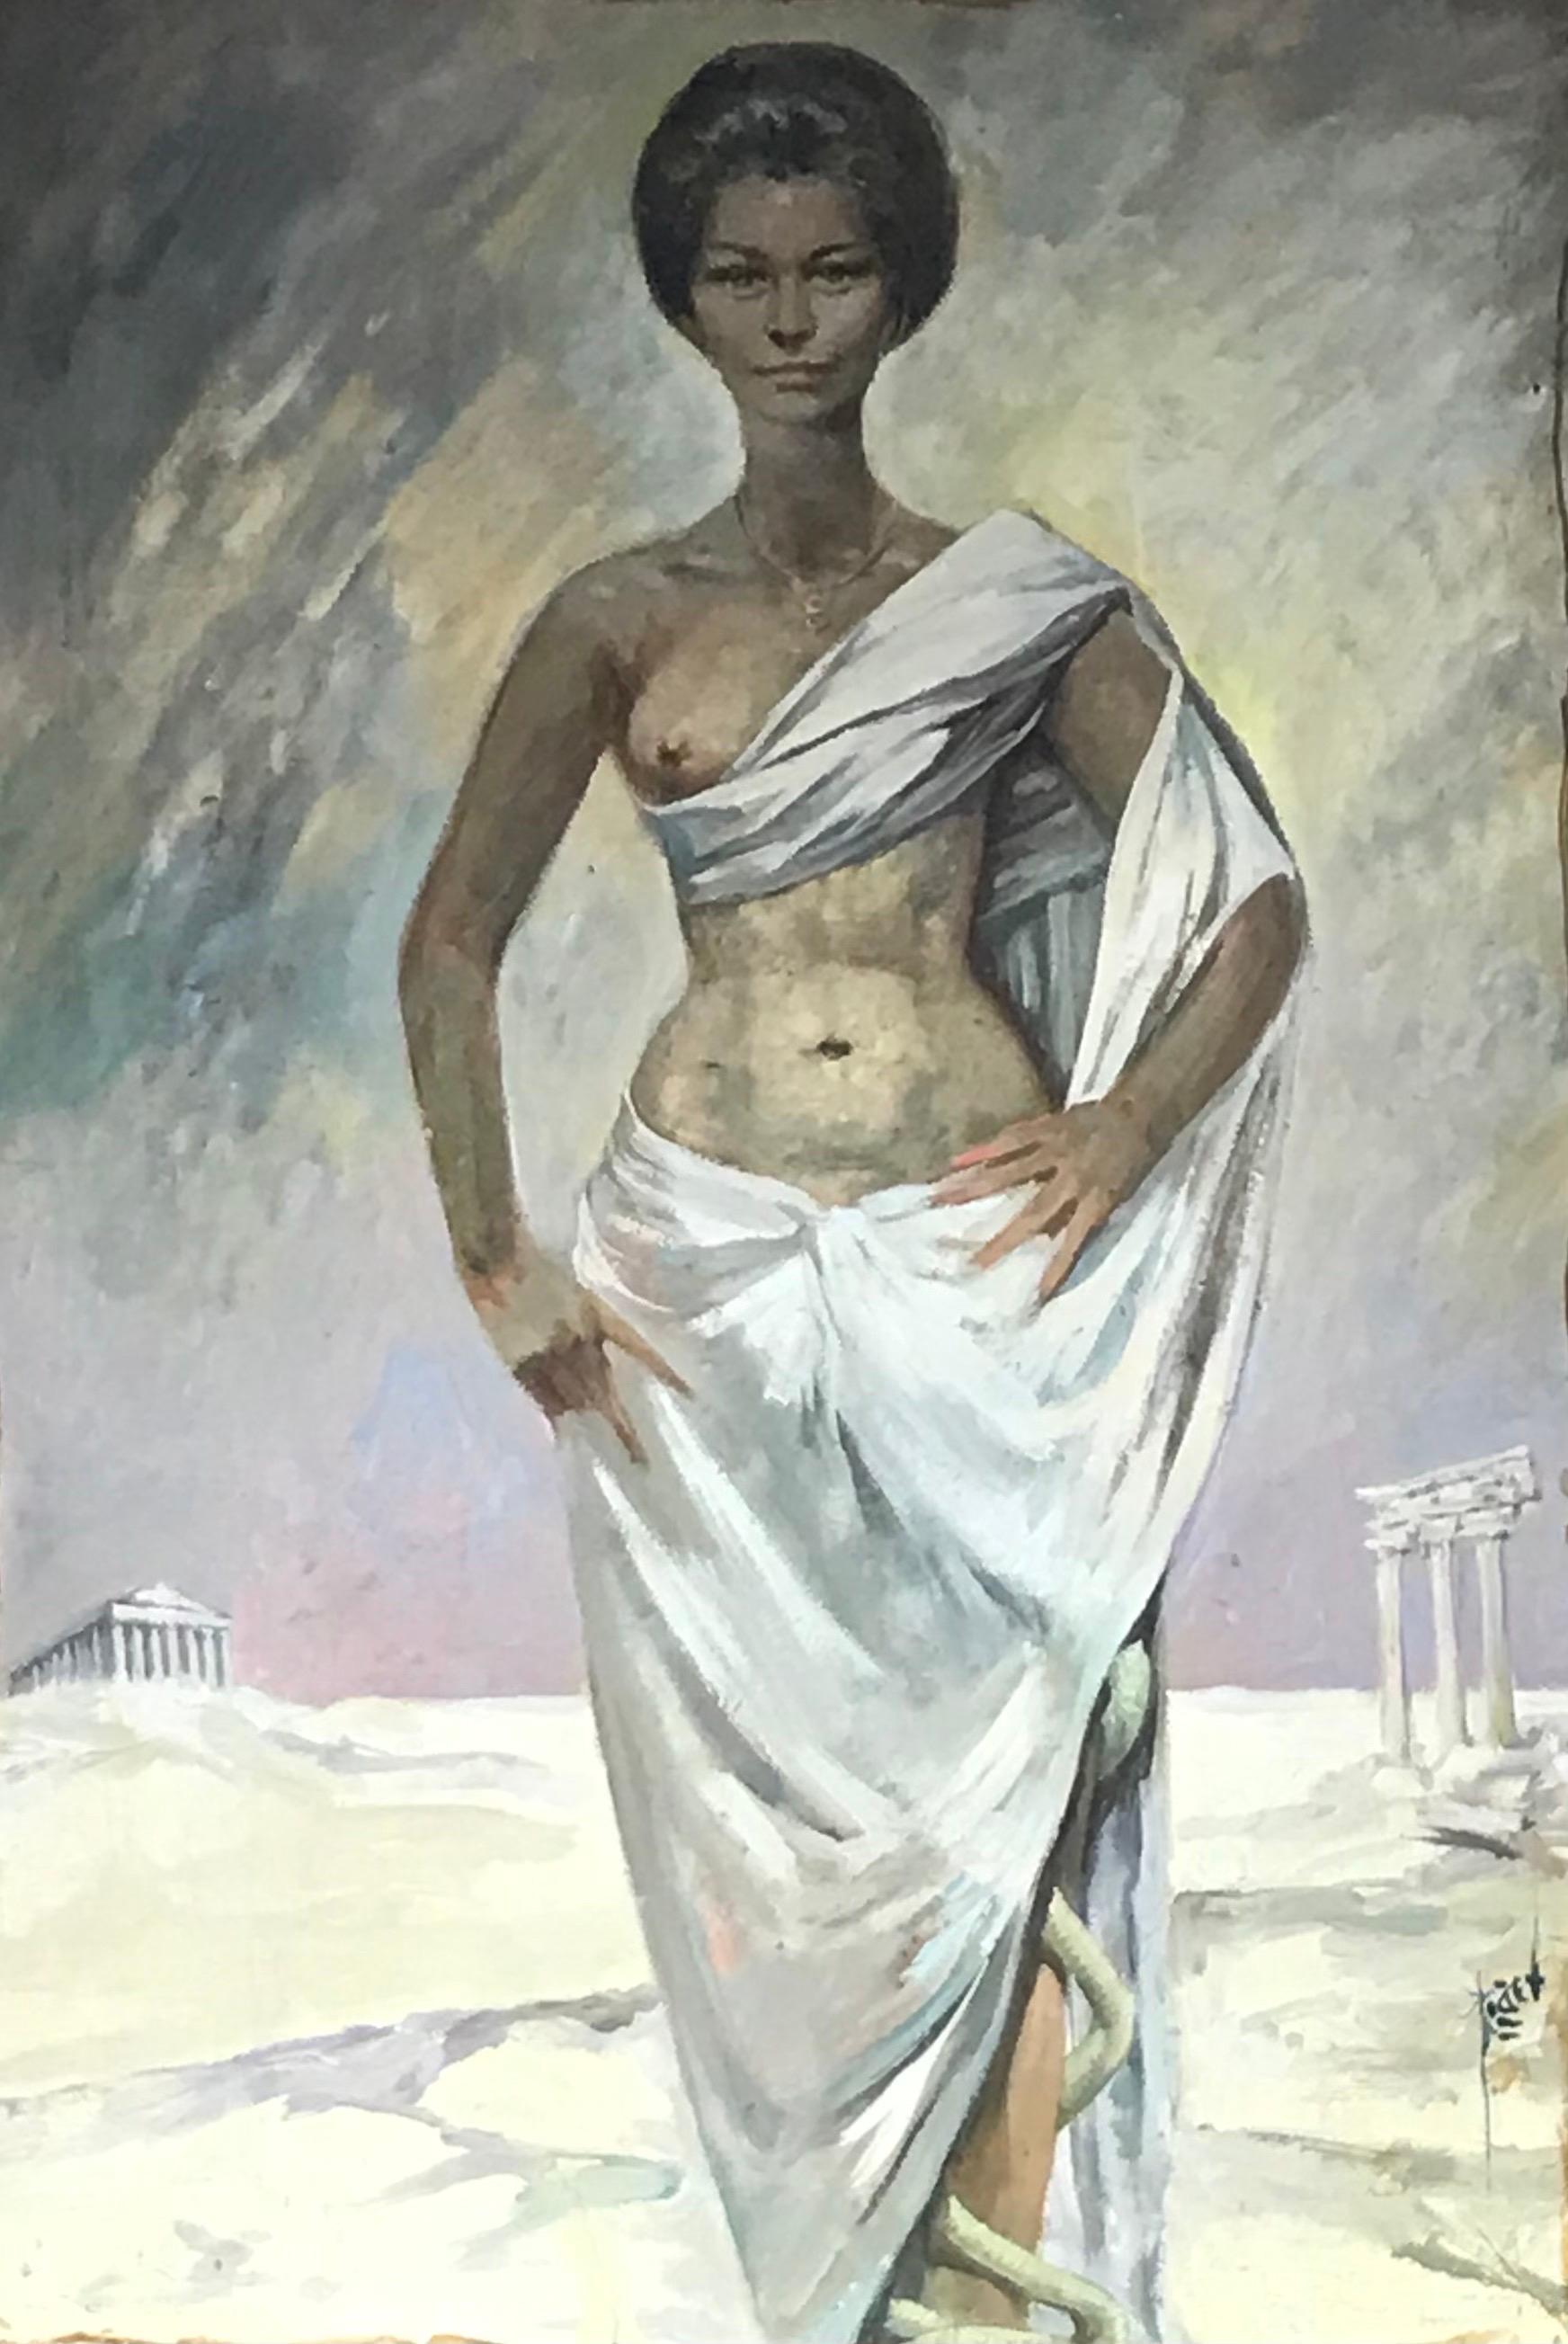 Großes französisches Ölporträt aus den 1960er Jahren mit römischem/griechischem Halbakt, Dame in klassischen Ruinen